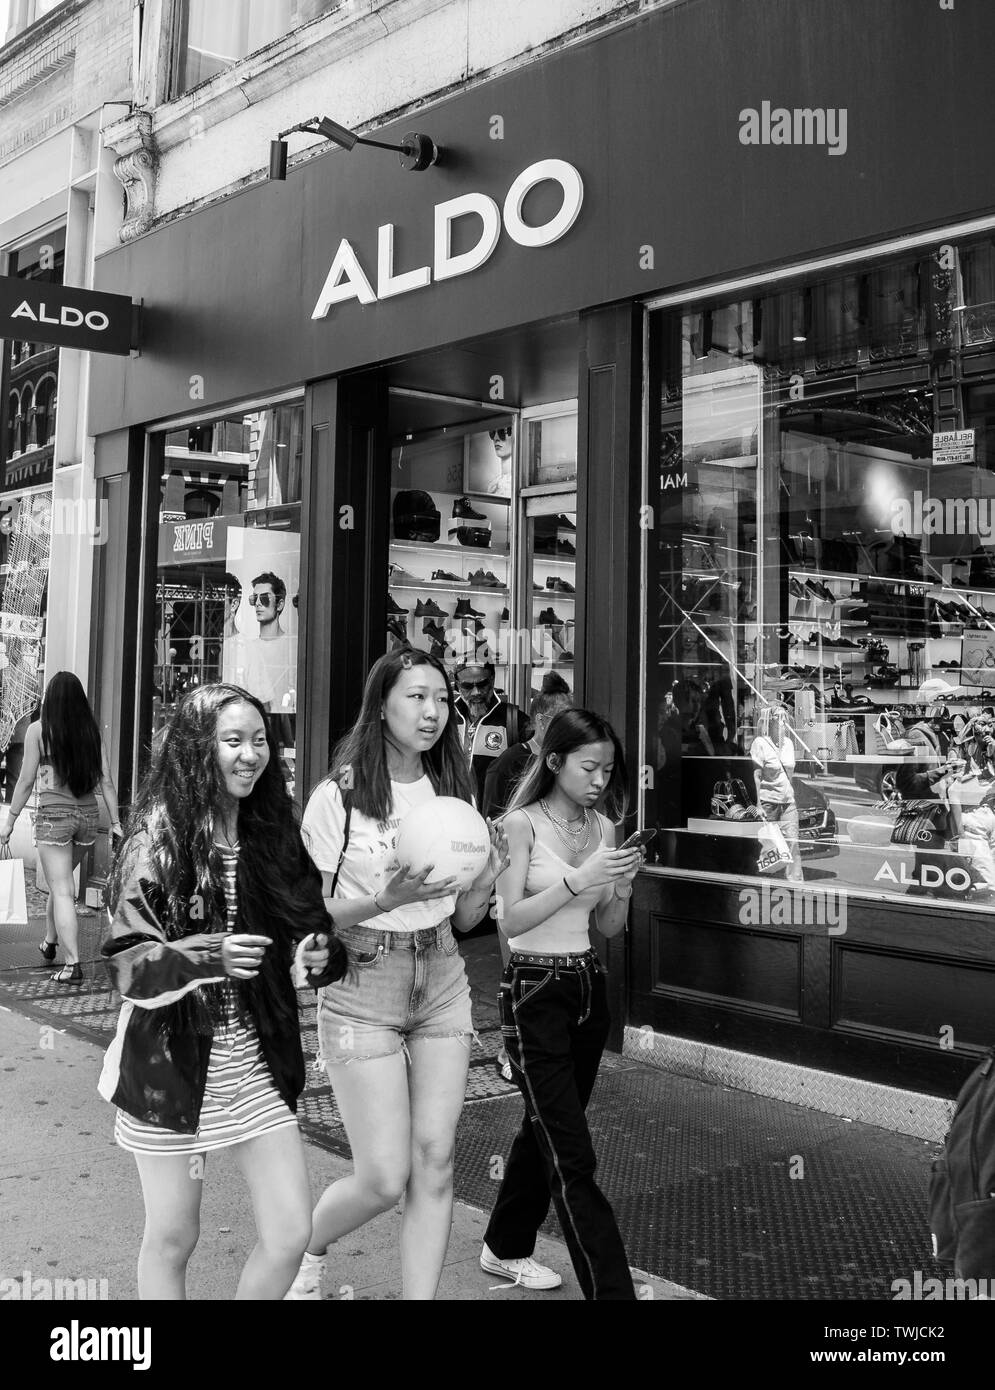 Stærk vind Virus Vedligeholdelse New York, 6/15/2019: Three young females walk by an ALDO store in SoHo  Stock Photo - Alamy